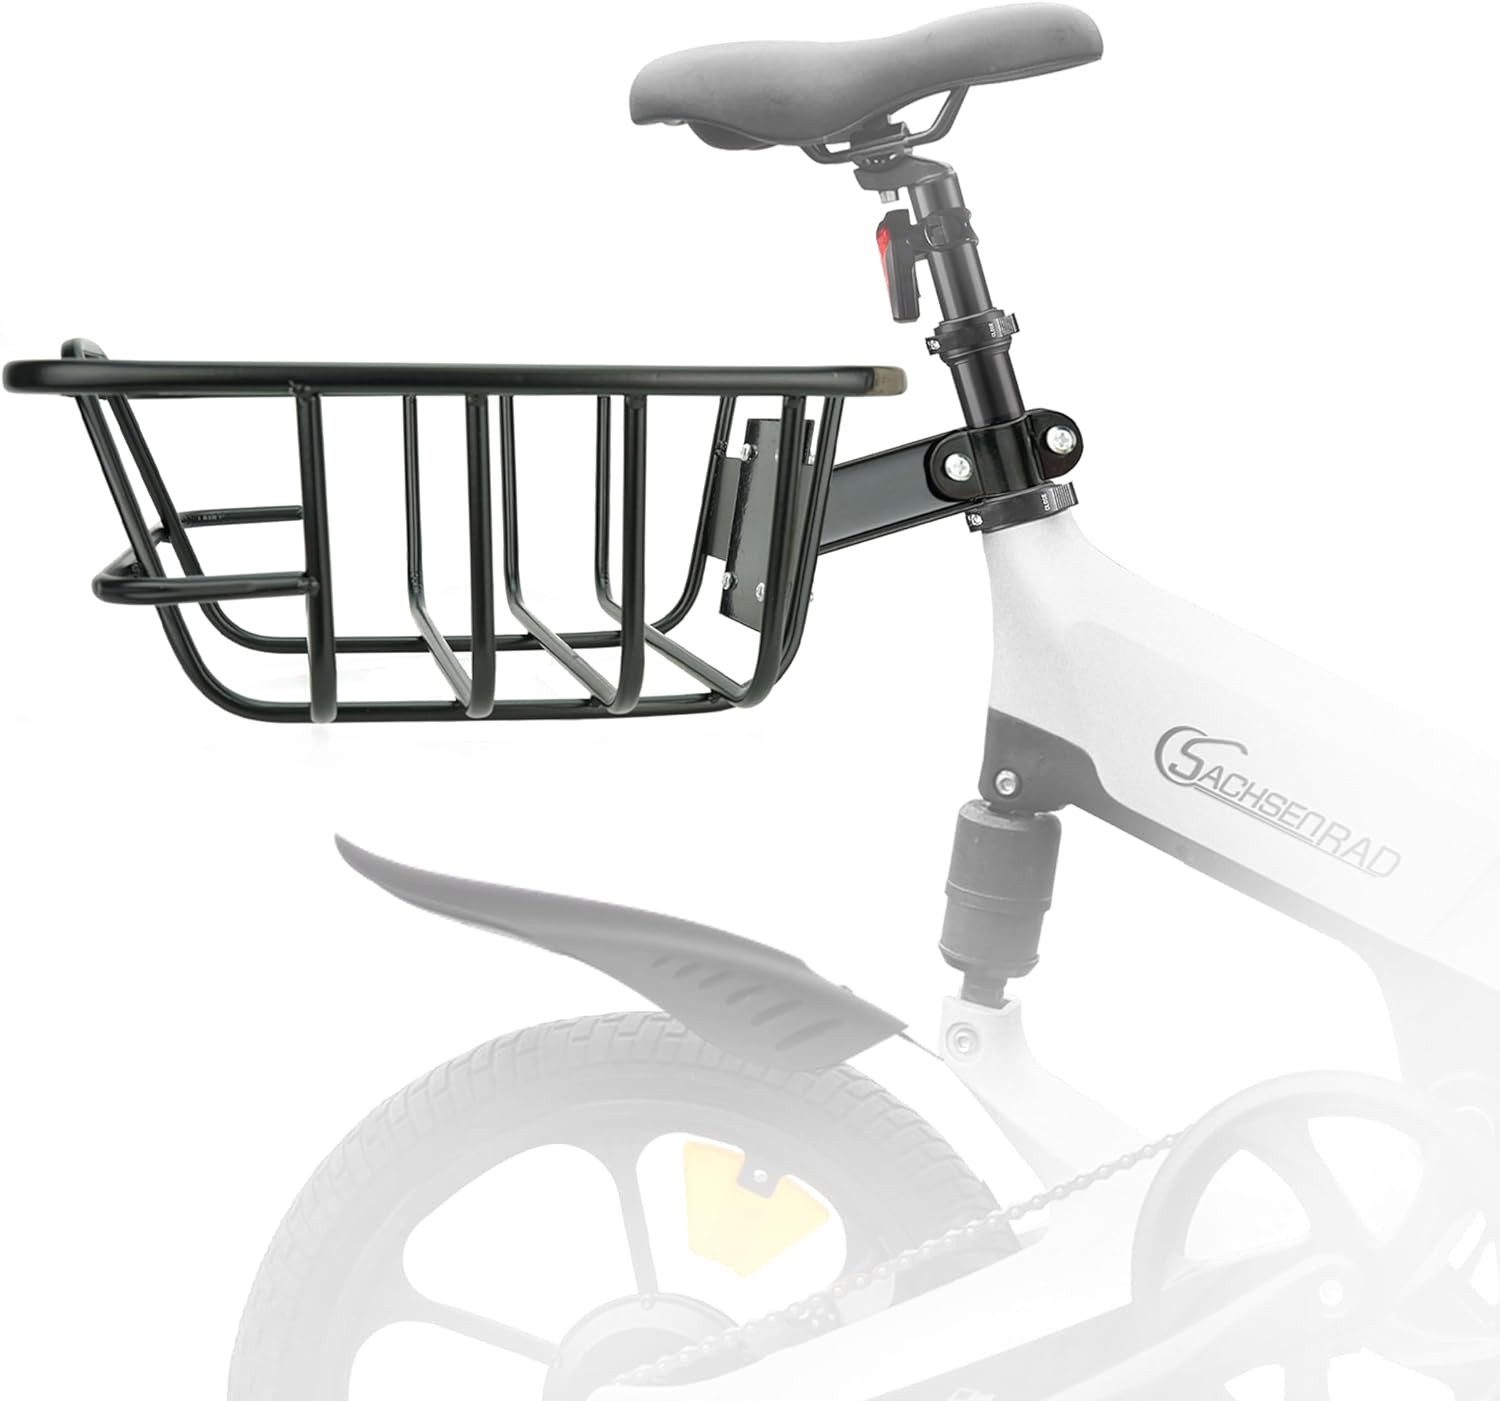 SachsenRAD Fahrrad-Gepäckträger Fahrrad-Heckträger mit Korb F12 F11 (Hochwertiger Metall-Fahrradträger für hinten am Fahrrad, Gepäckträger mit kostenlosem Spanngurt), Verstellbarer Fahrradträger für hinten am Fahrrad